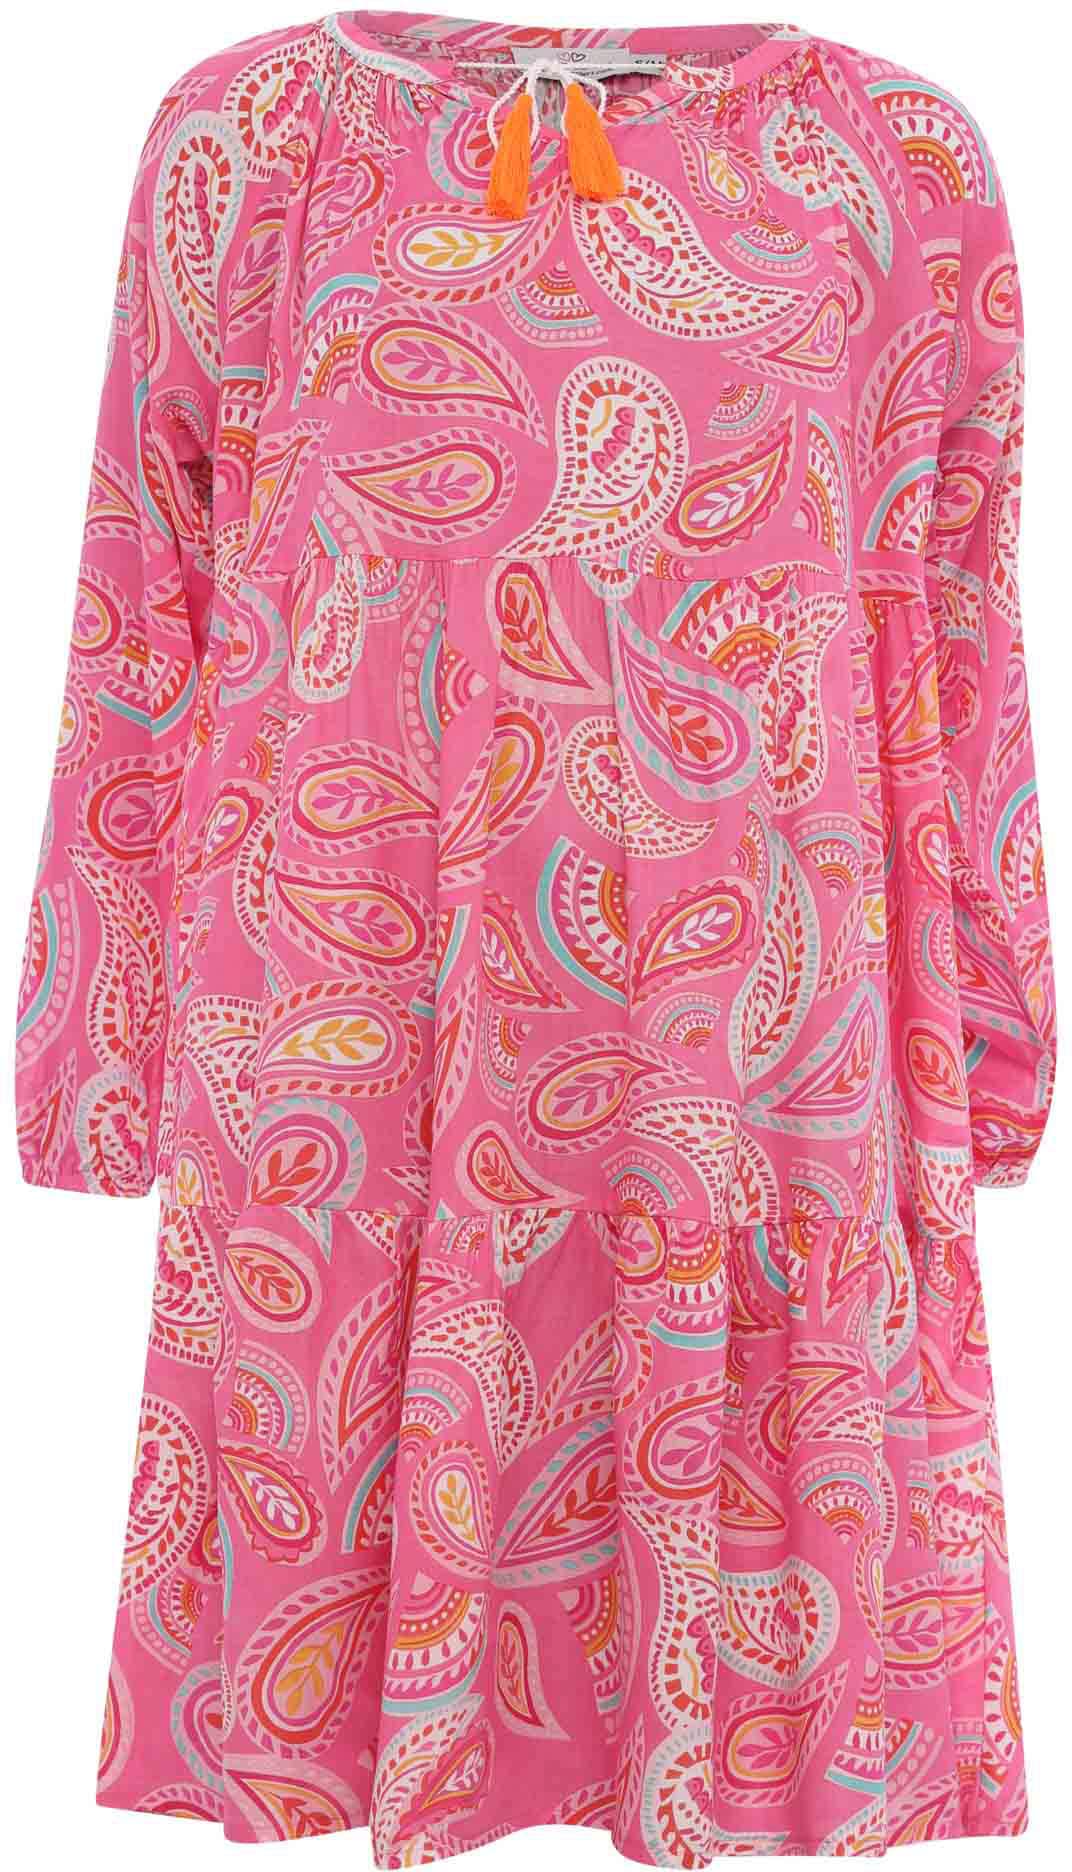 Pinkes Kleid online kaufen | jetzt Pinkfarbene bei OTTO Kleider